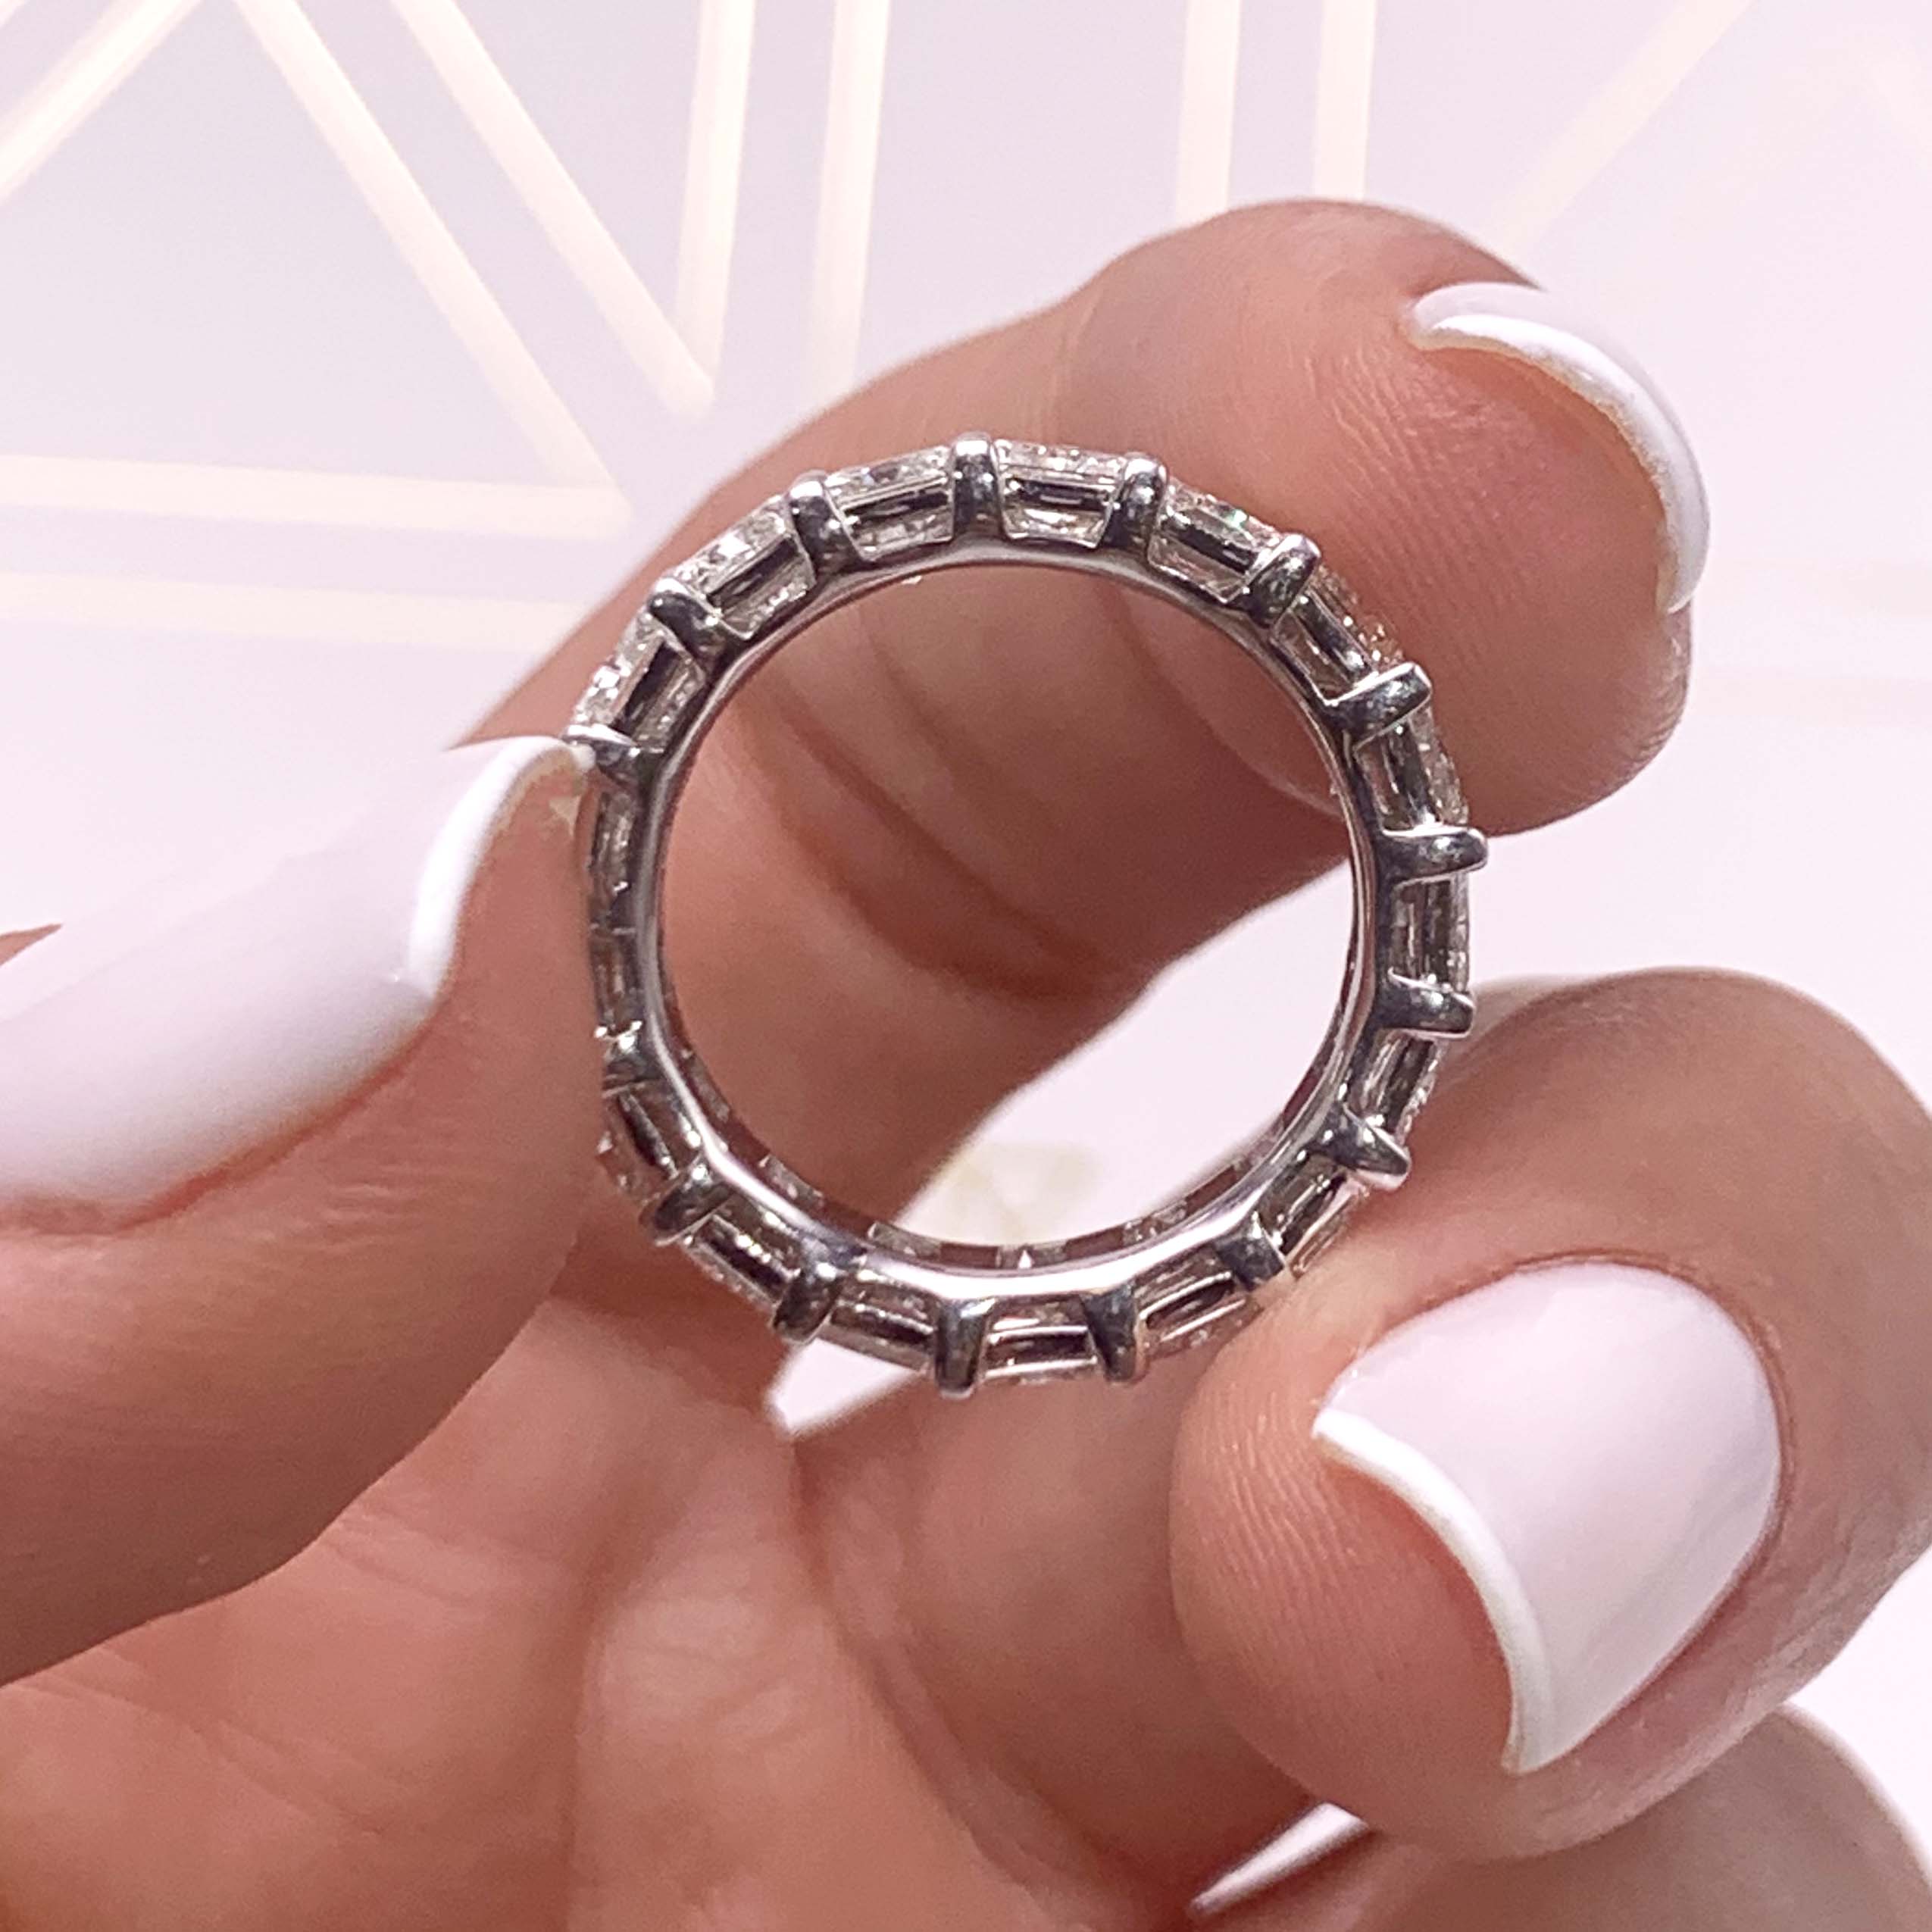 Andi Lab Grown Eternity Wedding Ring   (6 Carat) - 14K White Gold